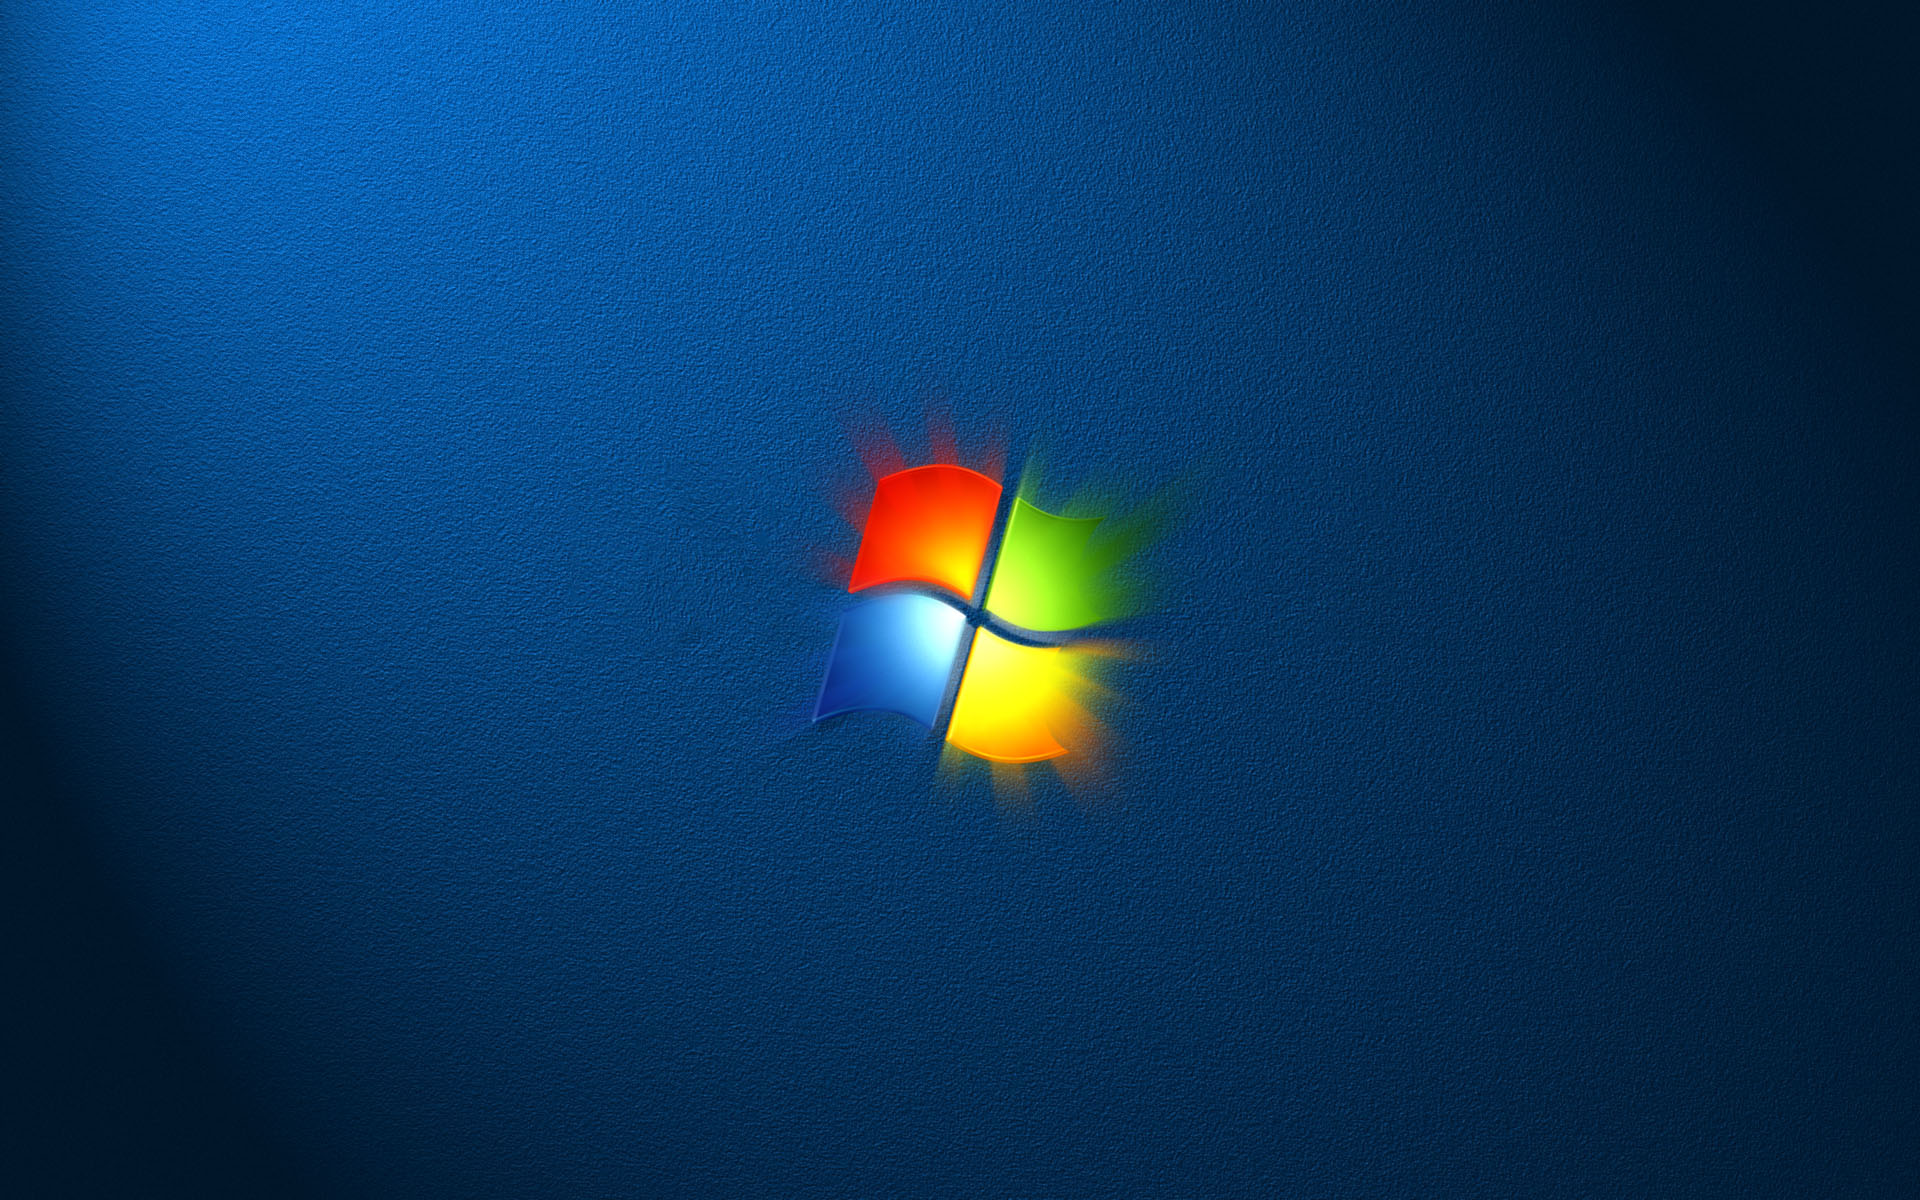 Фоны рабочего стола windows изменить. Виндовс 7. Обои Windows 7. Заставка Windows 7. Обои на рабочий стол Windows 7.